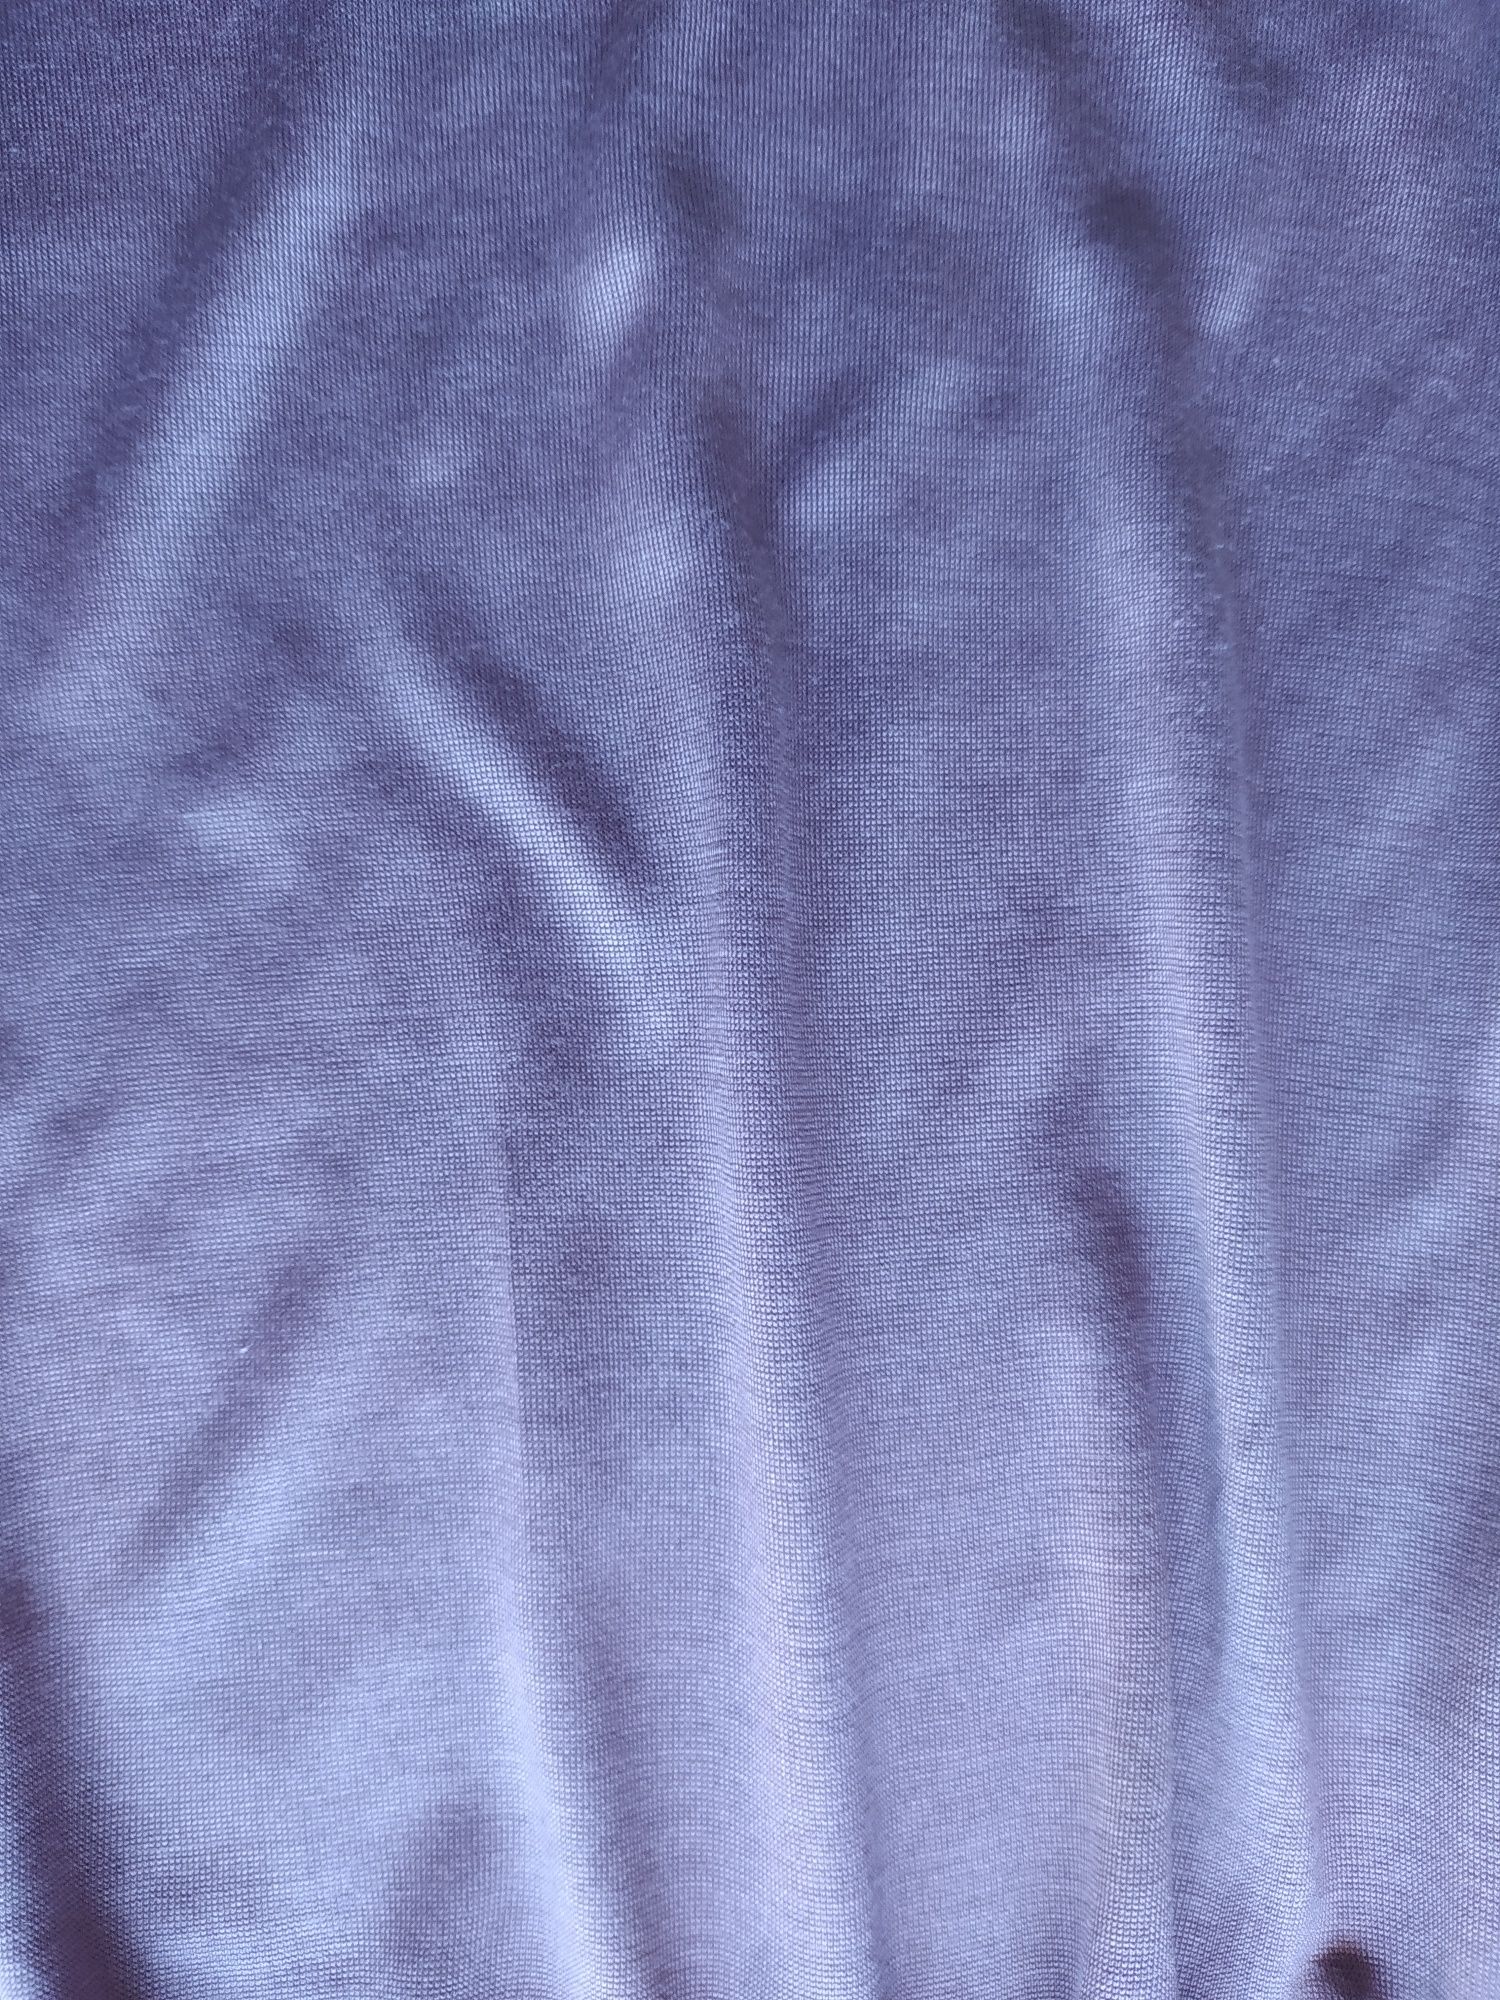 Blusa Massimo Dutti lilás tamanho M